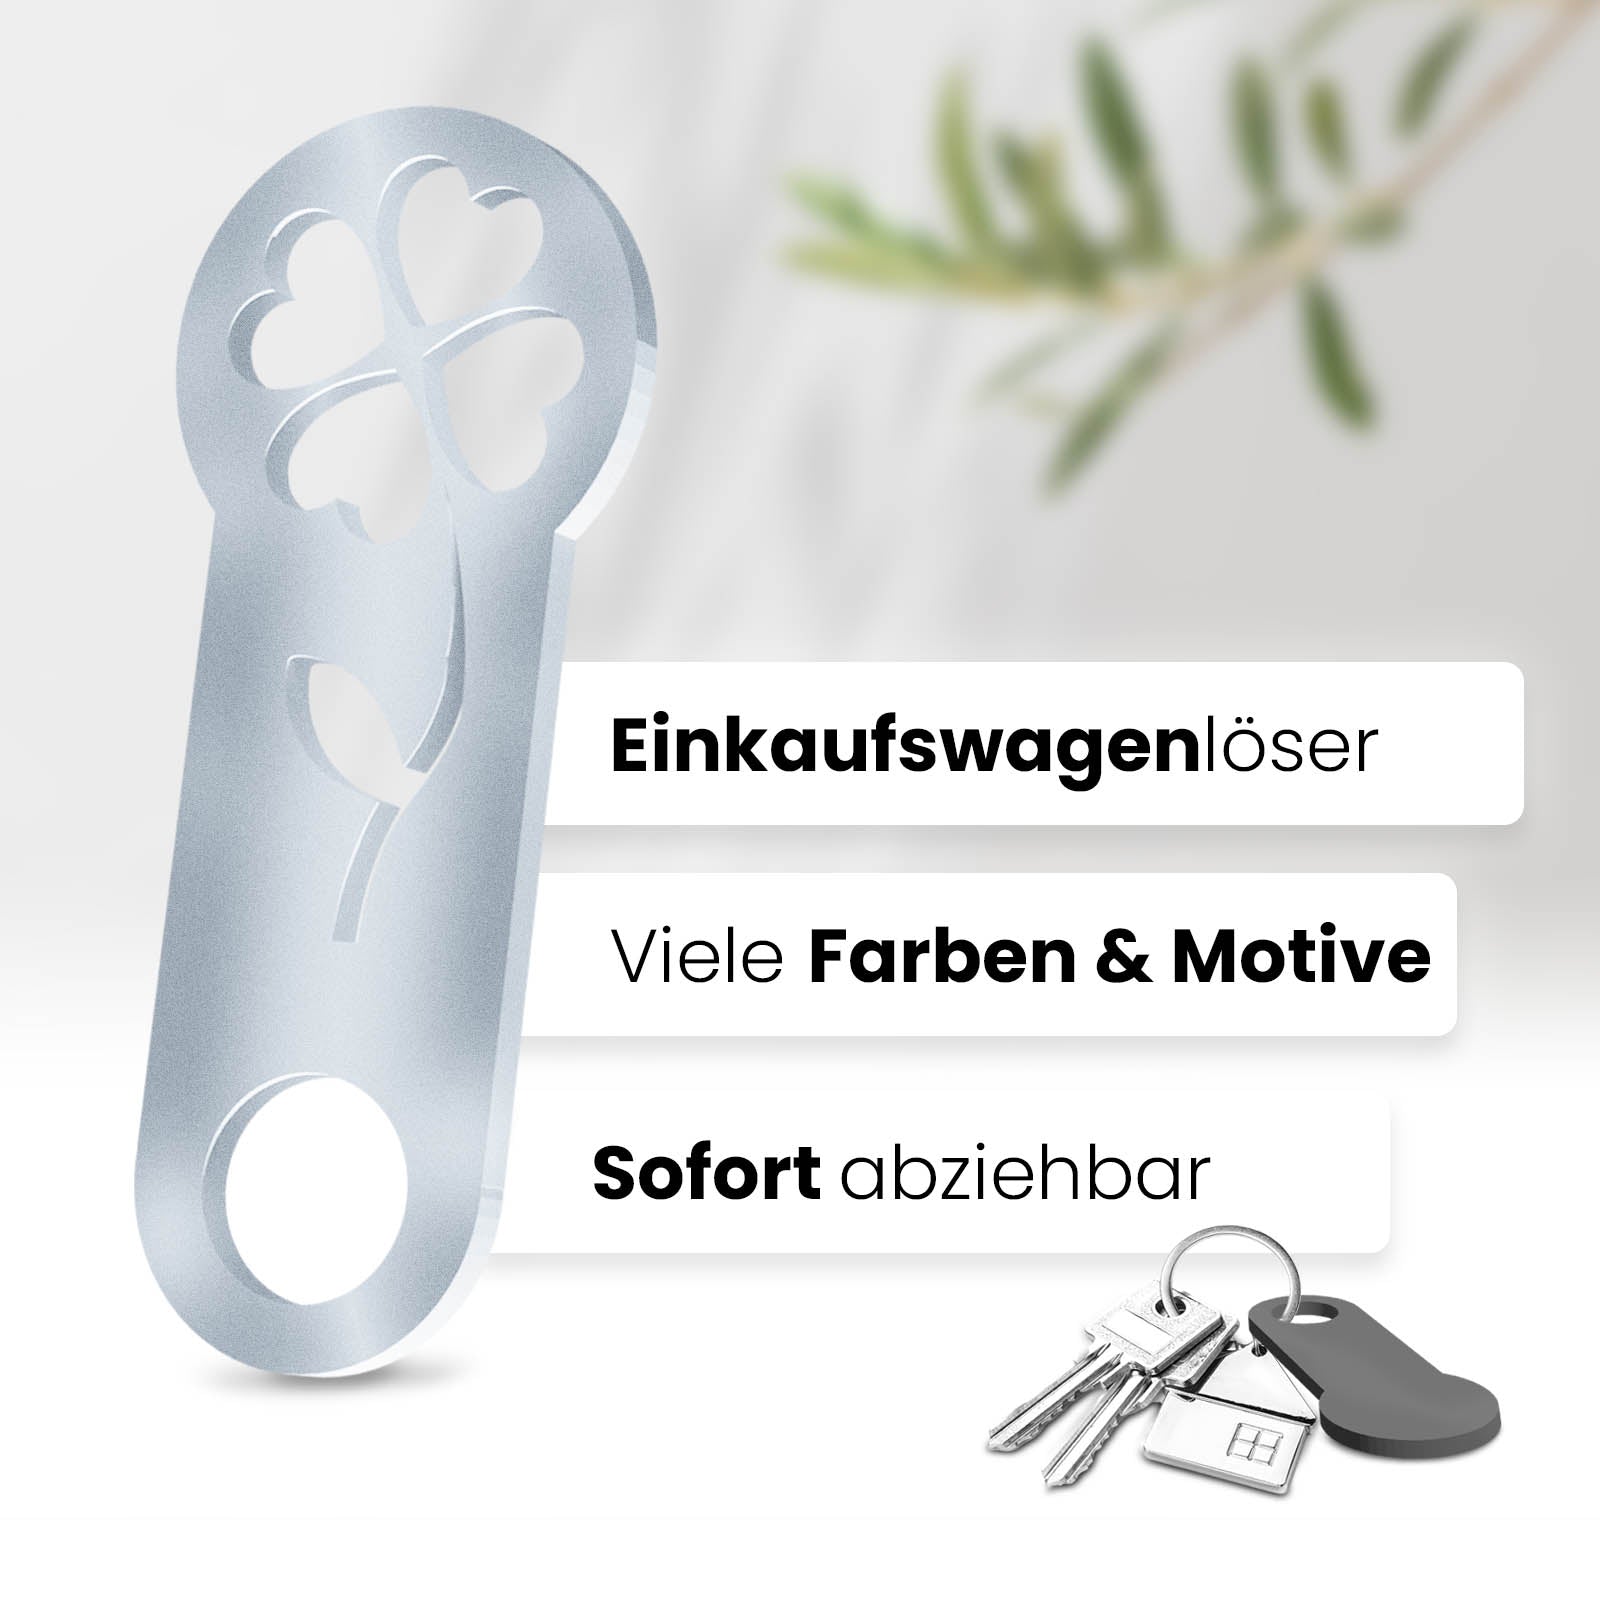 Entdecken Sie den Kleeblatt Schlüsselanhänger – ein sofort abziehbarer Glücksbringer mit integrierter Einkaufswagenlöser Funktion.